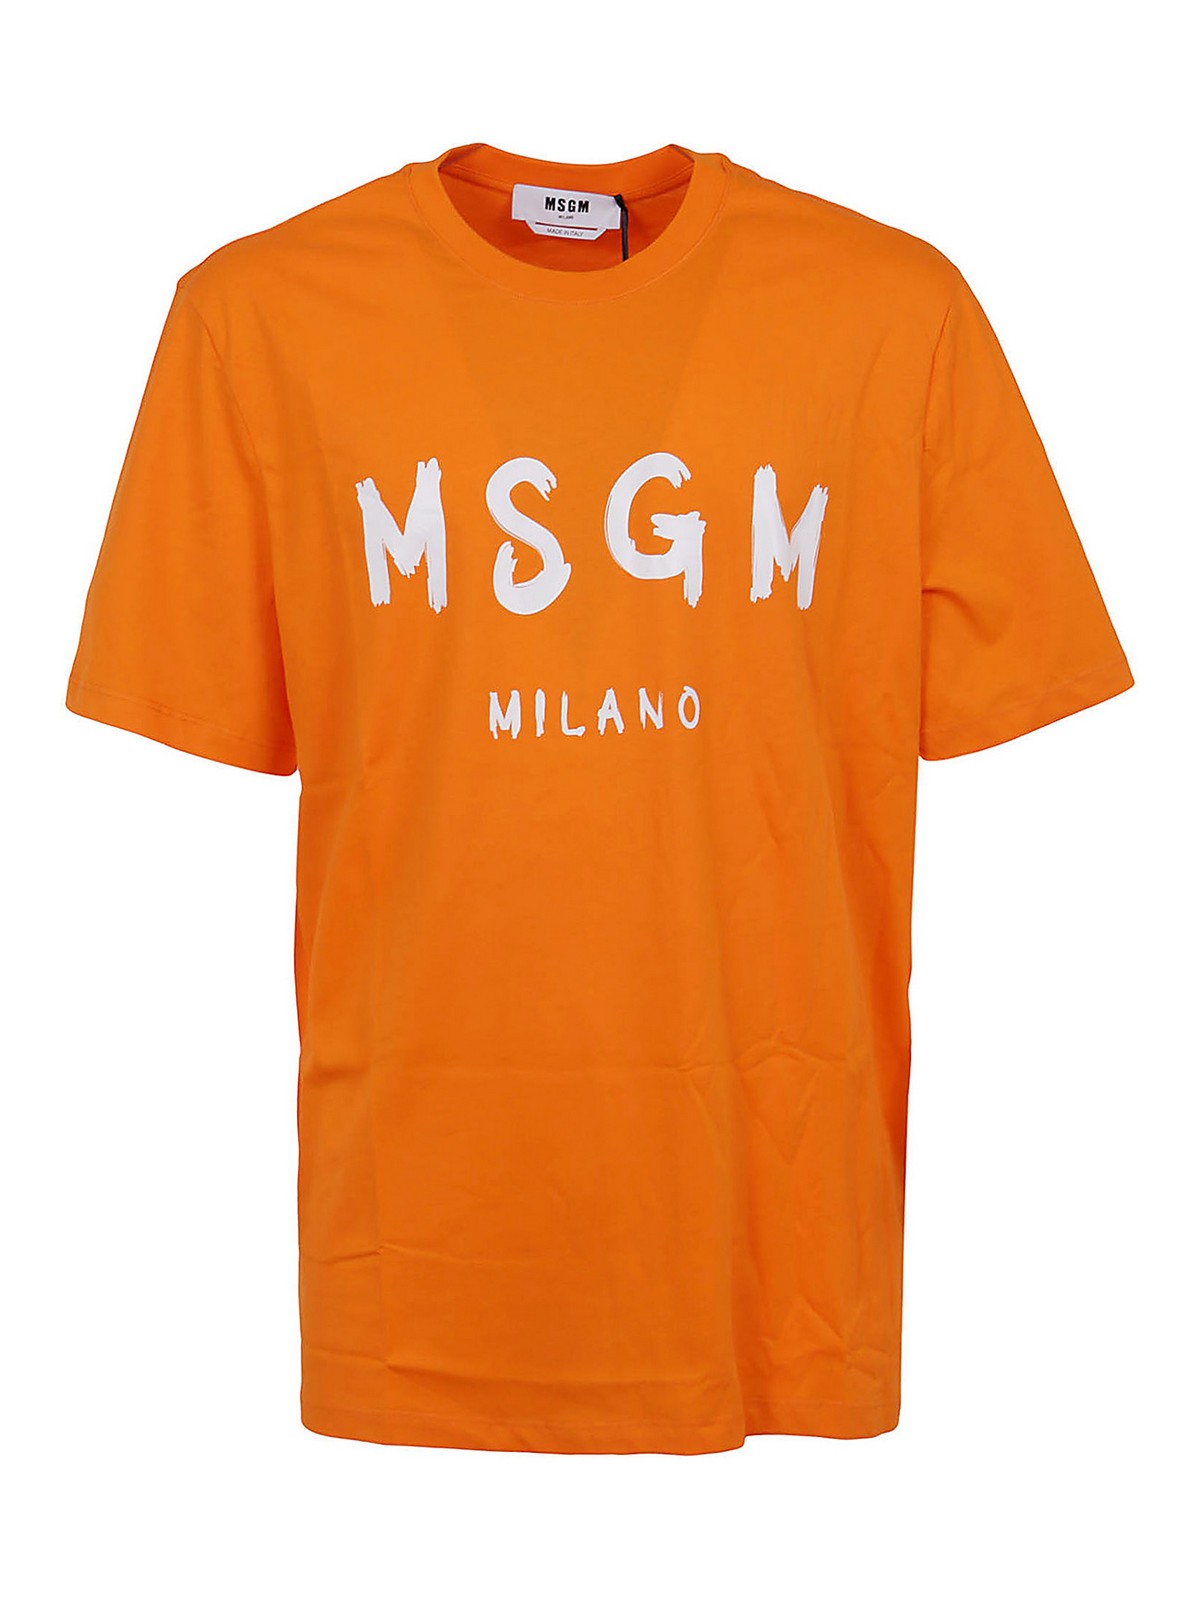 Tシャツ M.S.G.M. - Tシャツ - オレンジ - 3340MM51022779810